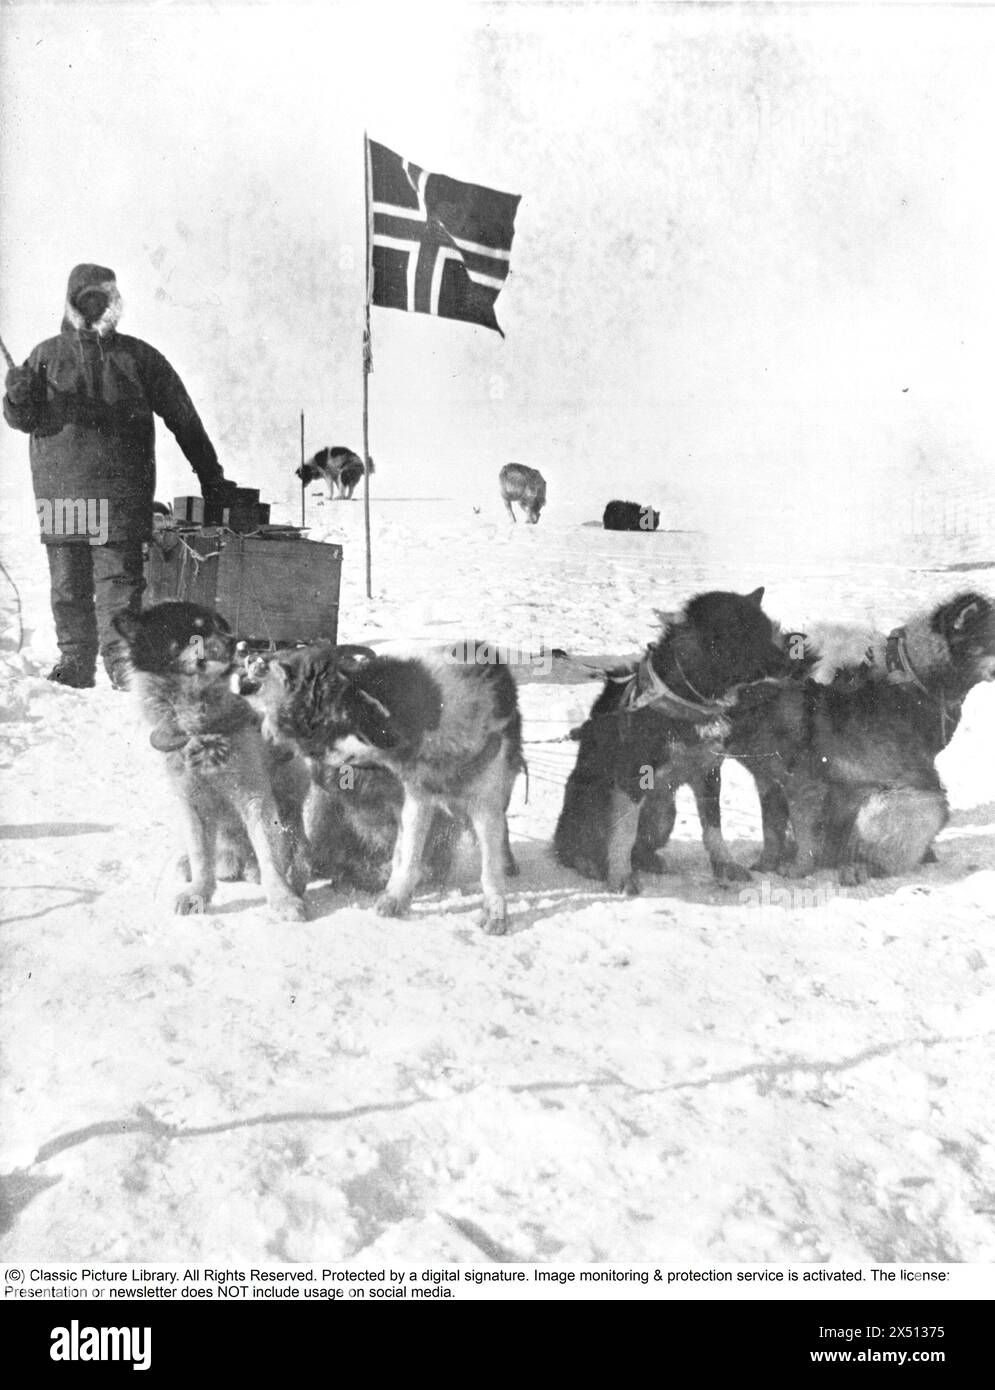 Roald Amundsen. Norwegischer Polarforscher. 1872-1928. Die Südpol-Expedition 1910–1912. Nachdem Amundsen 1903–1906 mit der Gjøa durch die Nordwestpassage gefahren war, plante Amundsen eine Expedition zum Nordpol. Er konnte Nansens Fram ausleihen und für eine Nordpolexpedition ausrüsten. Aber nachdem er die Nachricht erhielt, dass Robert Peary den Pole Point erreicht hatte, entschied er sich, auf den Südpol zu setzen. Amundsen befürchtete, dass Nansen Fram zurücknehmen würde, wenn er von den geänderten Plänen erfährt, und erzählte daher nur seinem Bruder und dem Kapitän von Fram, Thorvald Nilsen, dass der Südpol der Fall sei Stockfoto